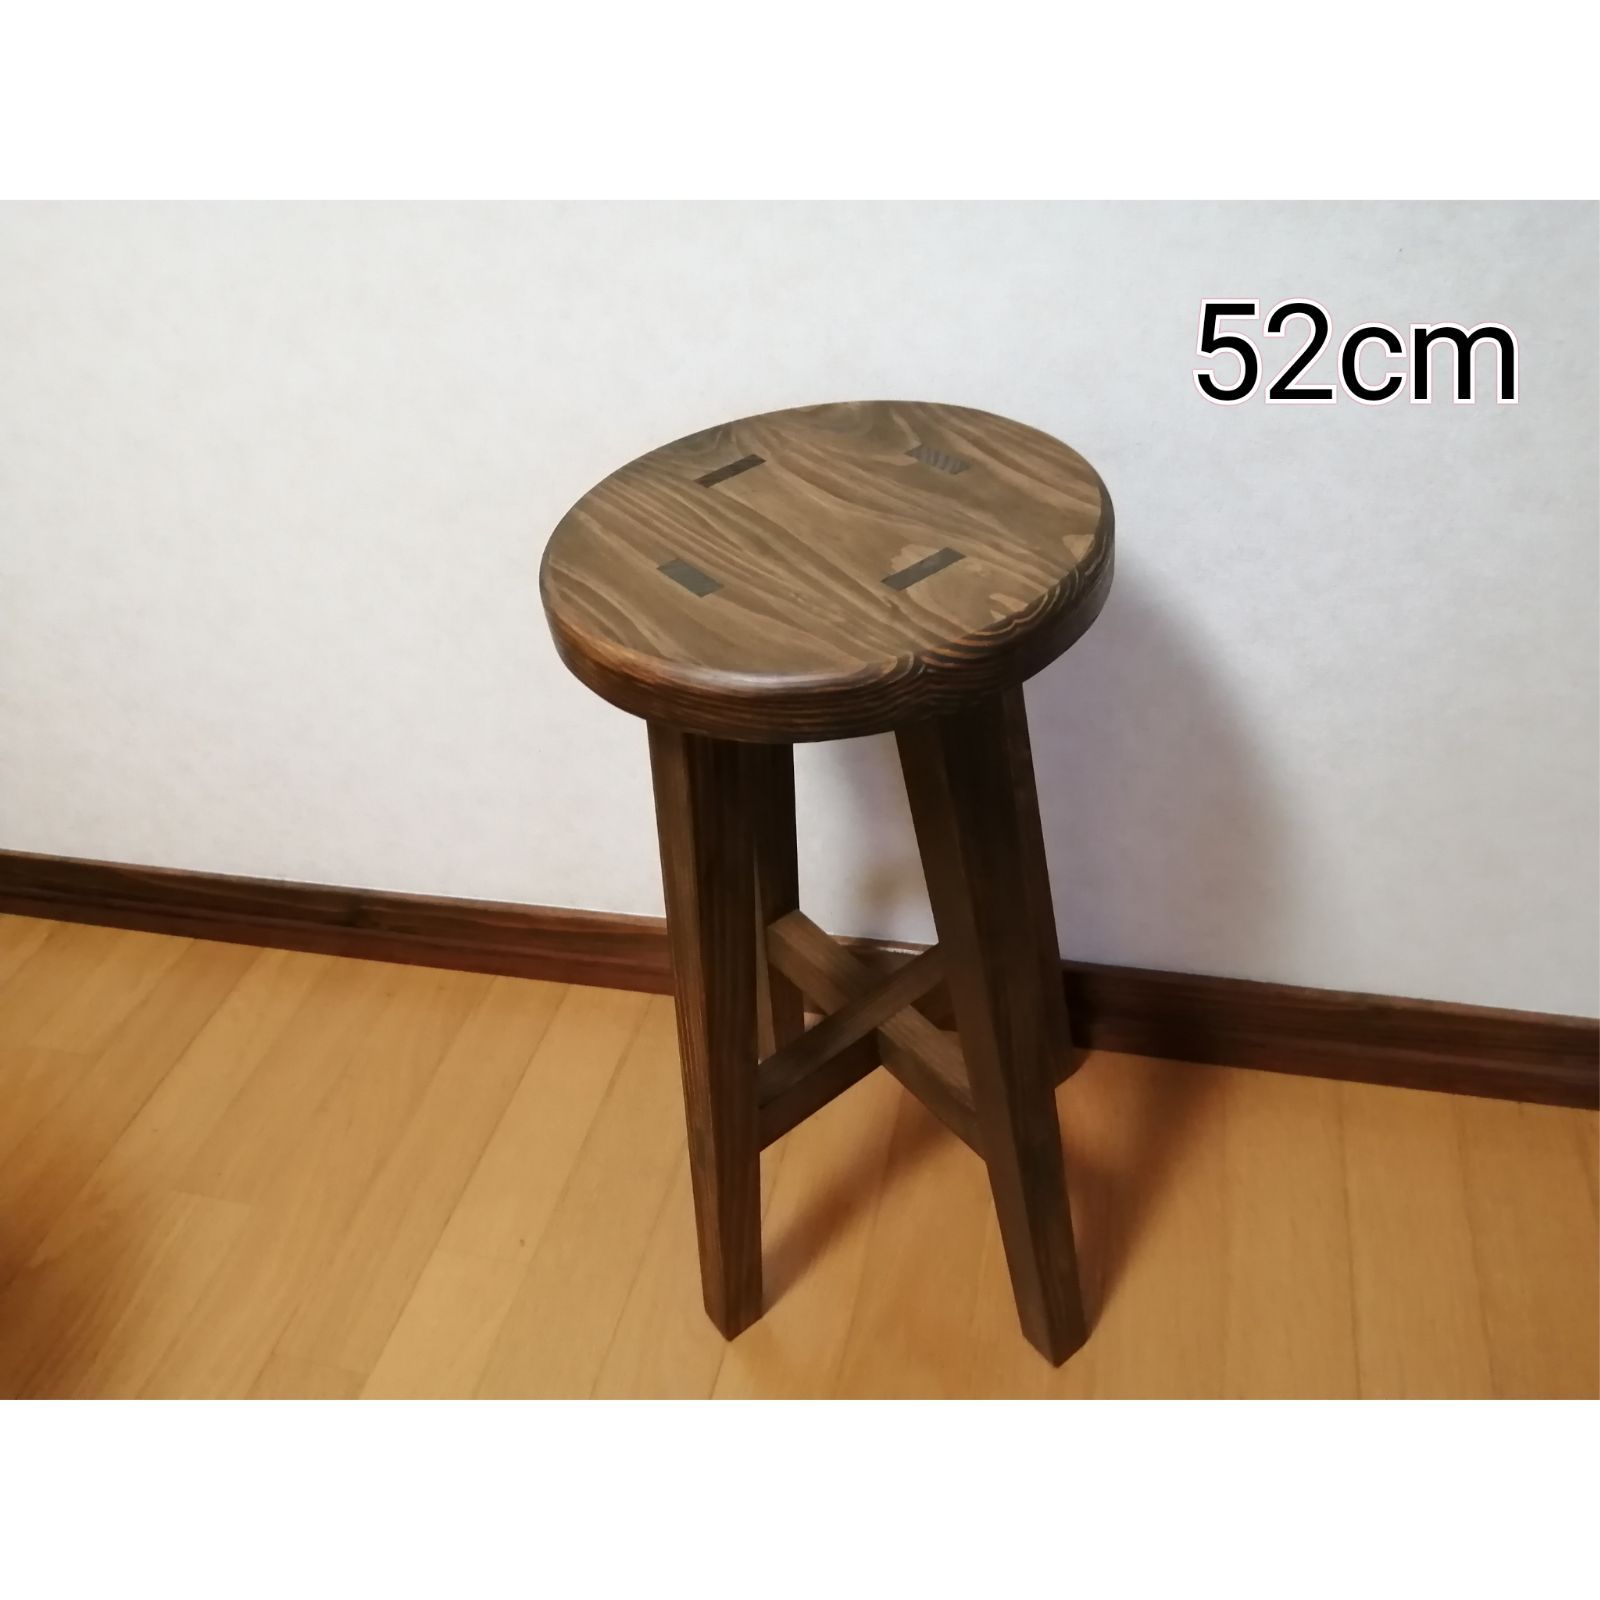 ほぞ組】木製スツール 高さ52cm 丸椅子 stool 猫犬スツール - スツール